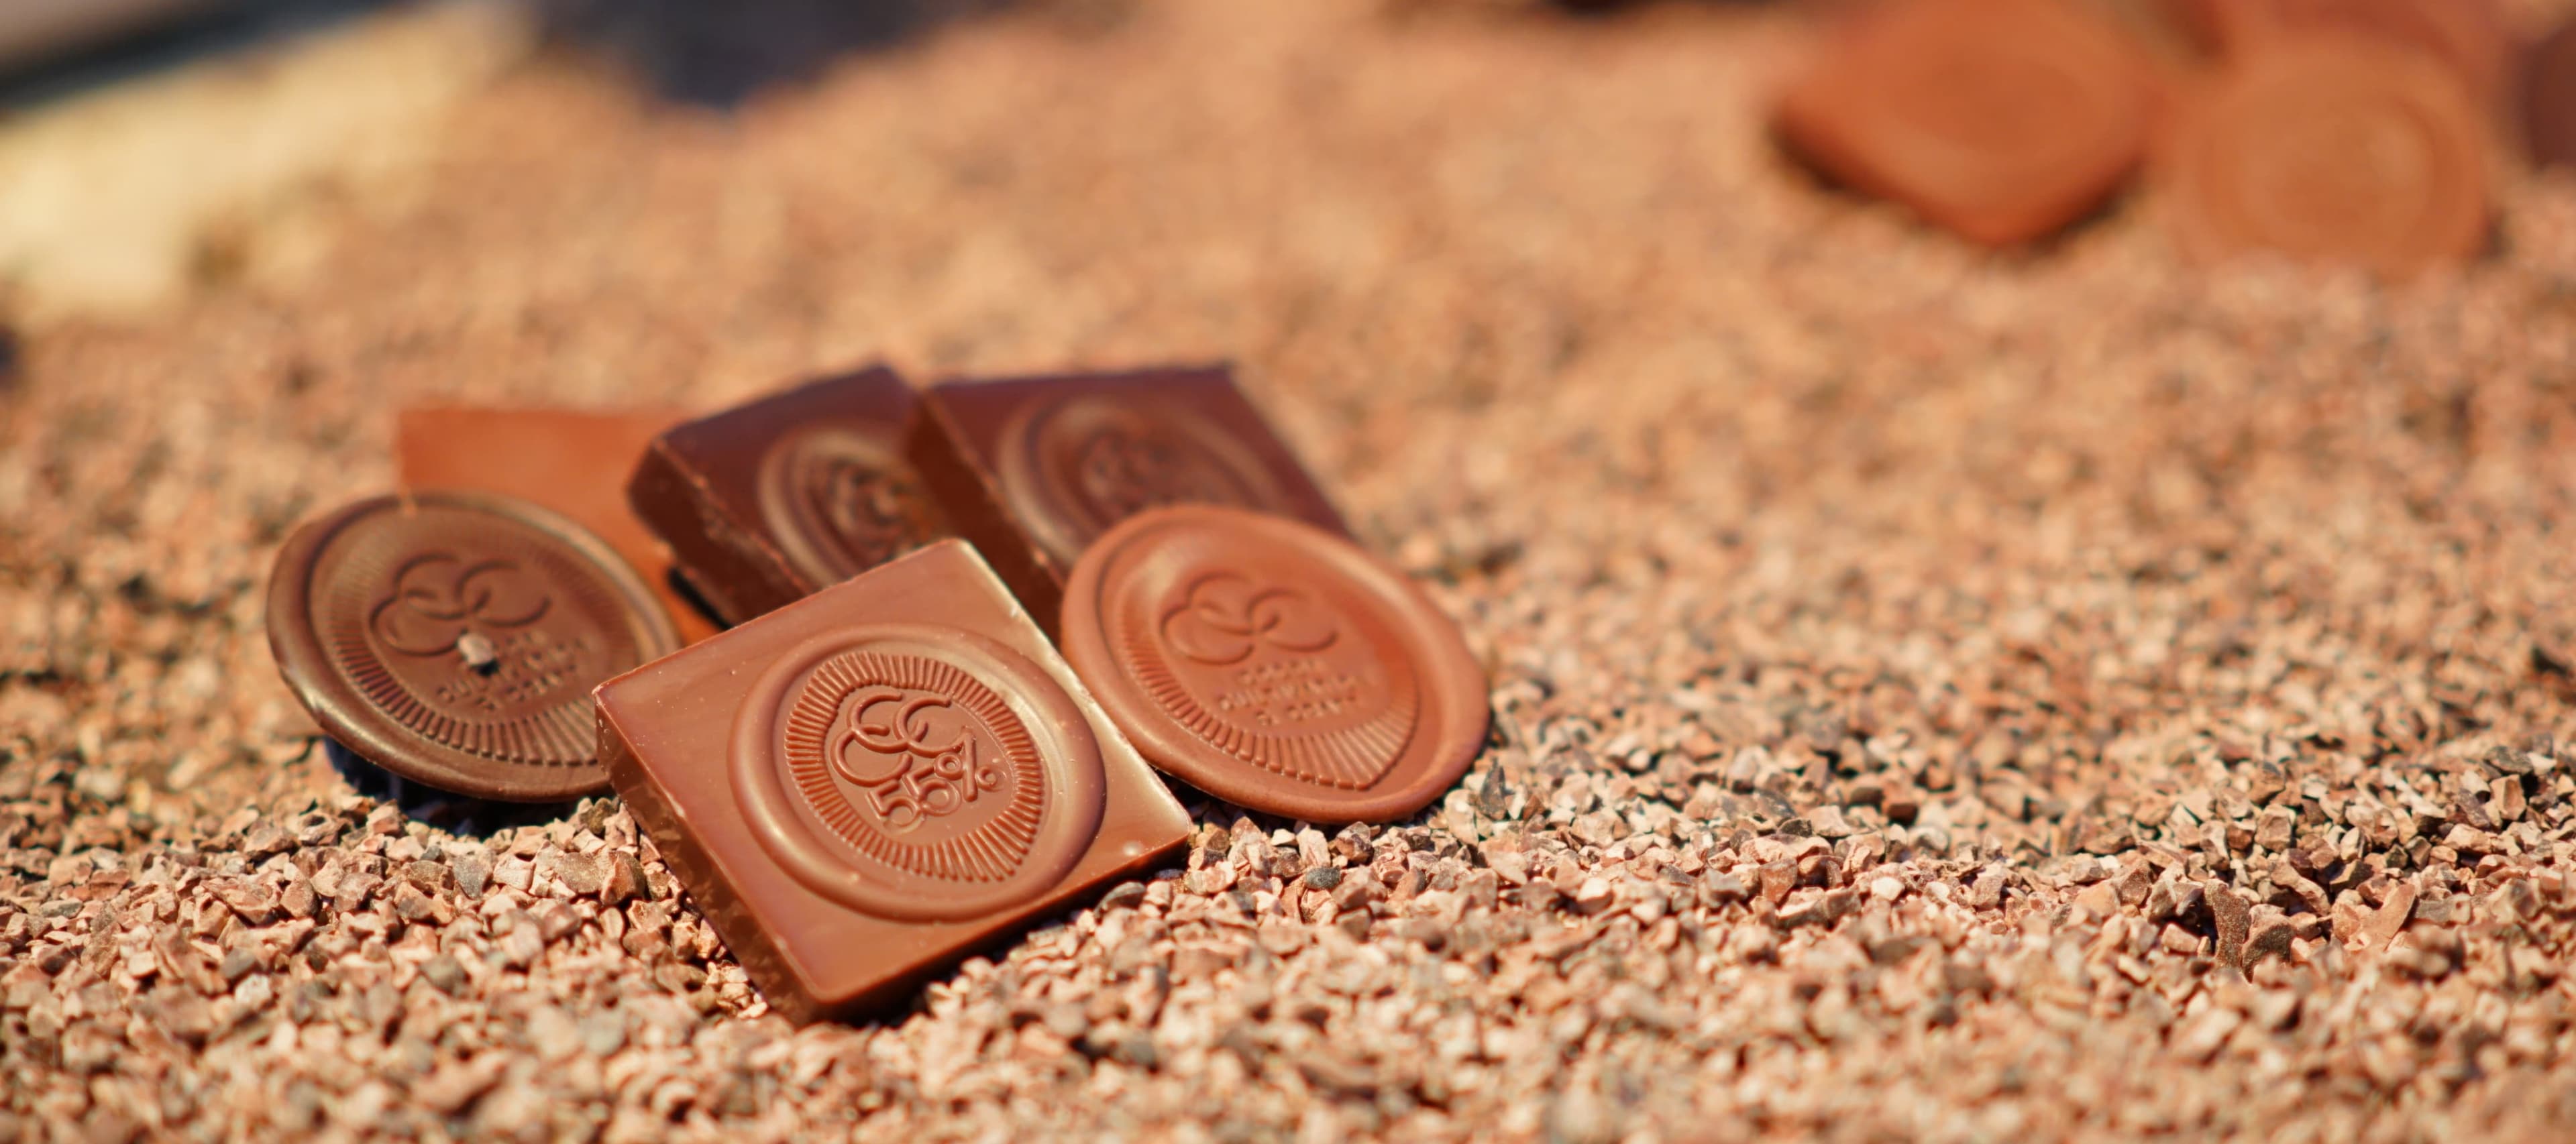 Фото новости: "Крупнейший в мире производитель шоколада представил «шоколад второго поколения»"